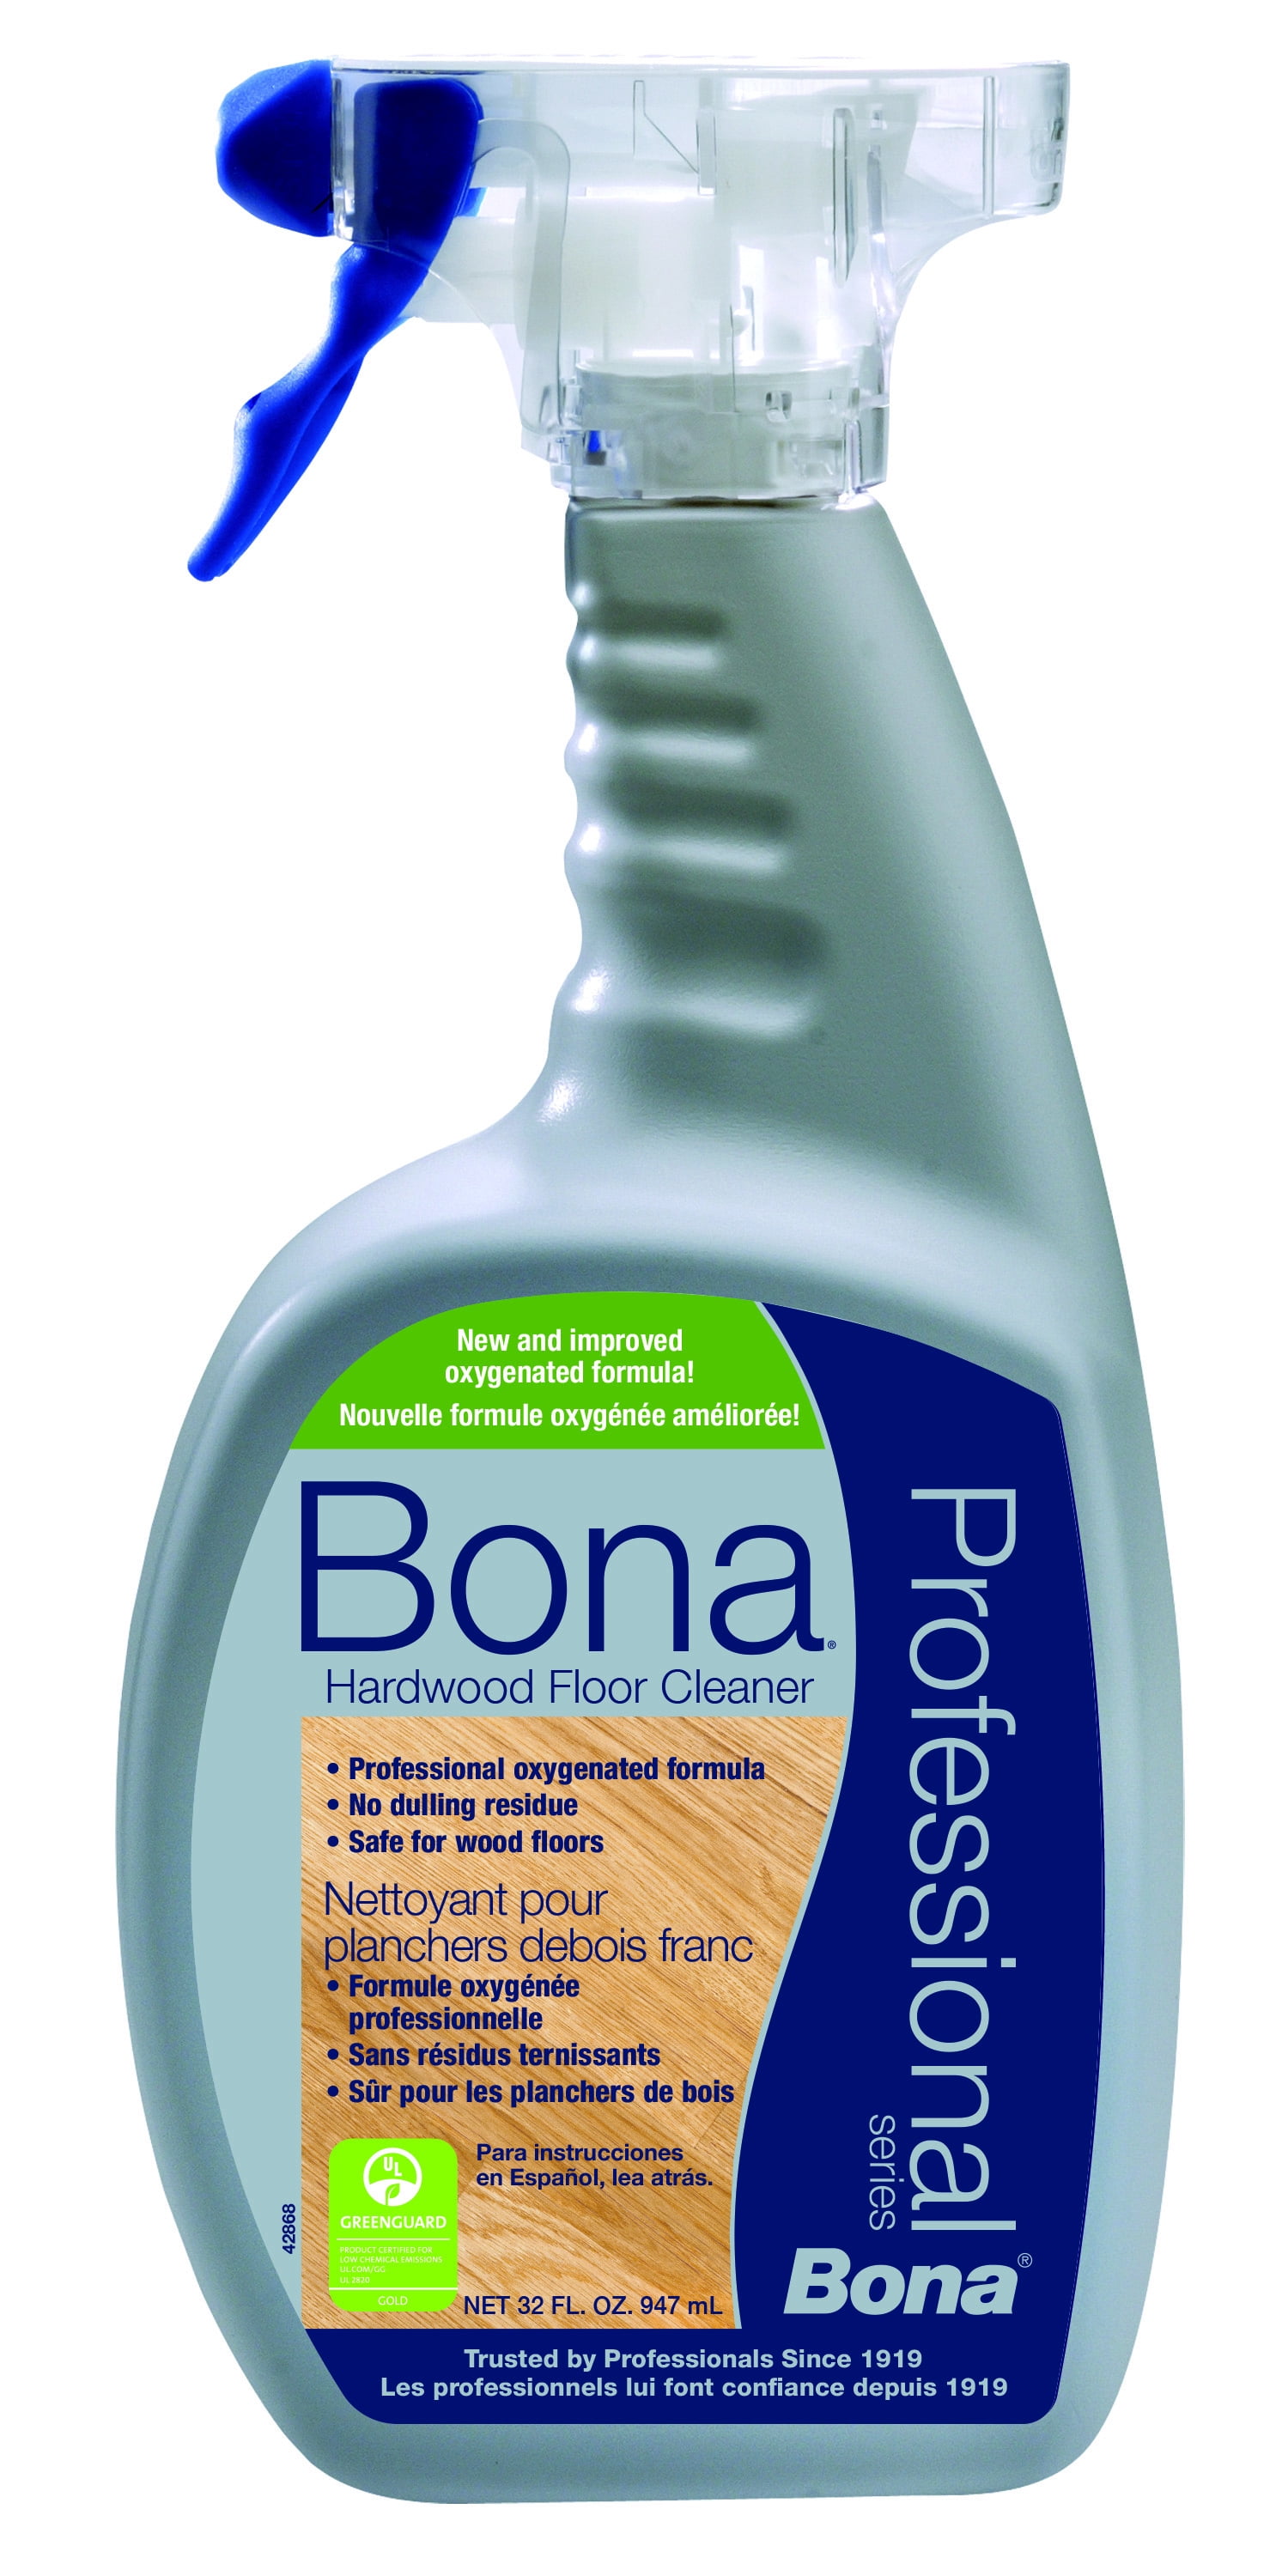 Bona Pro Series Hardwood Floor Cleaner, Professional Hardwood Floor Cleaning Services